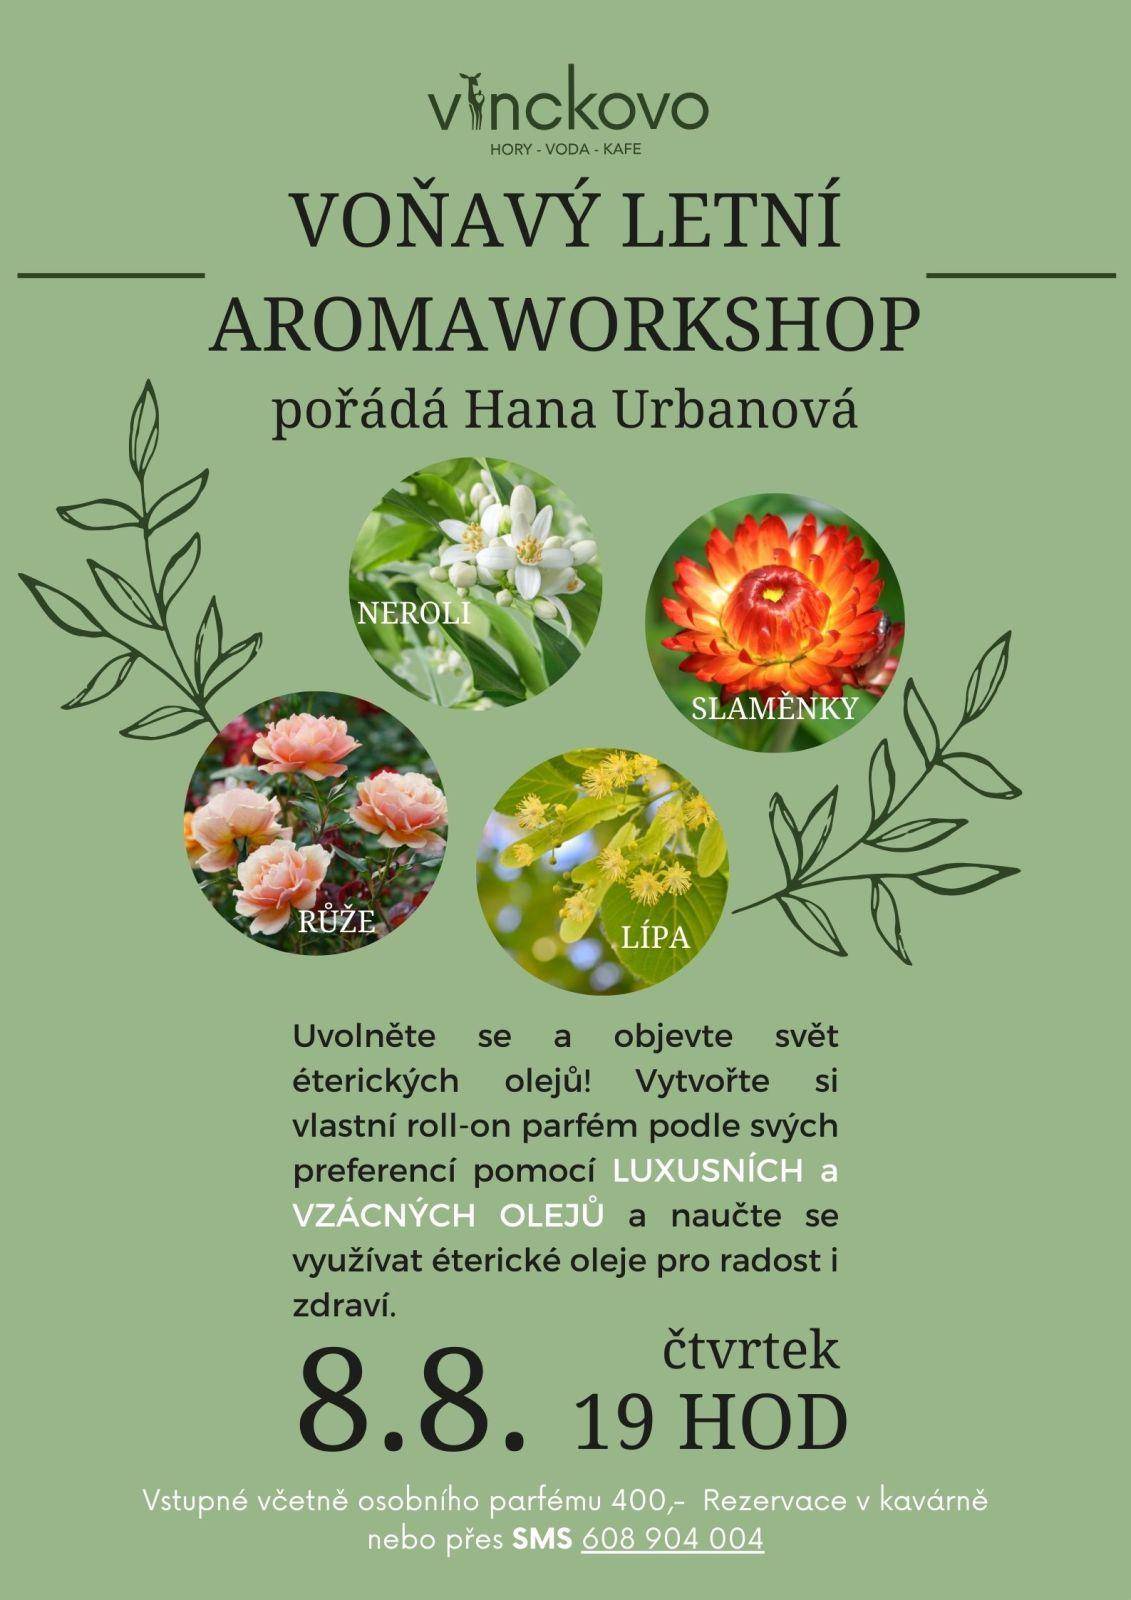 Workshop aromaterapie a výroba parfému pod vedením Hany Urbanové